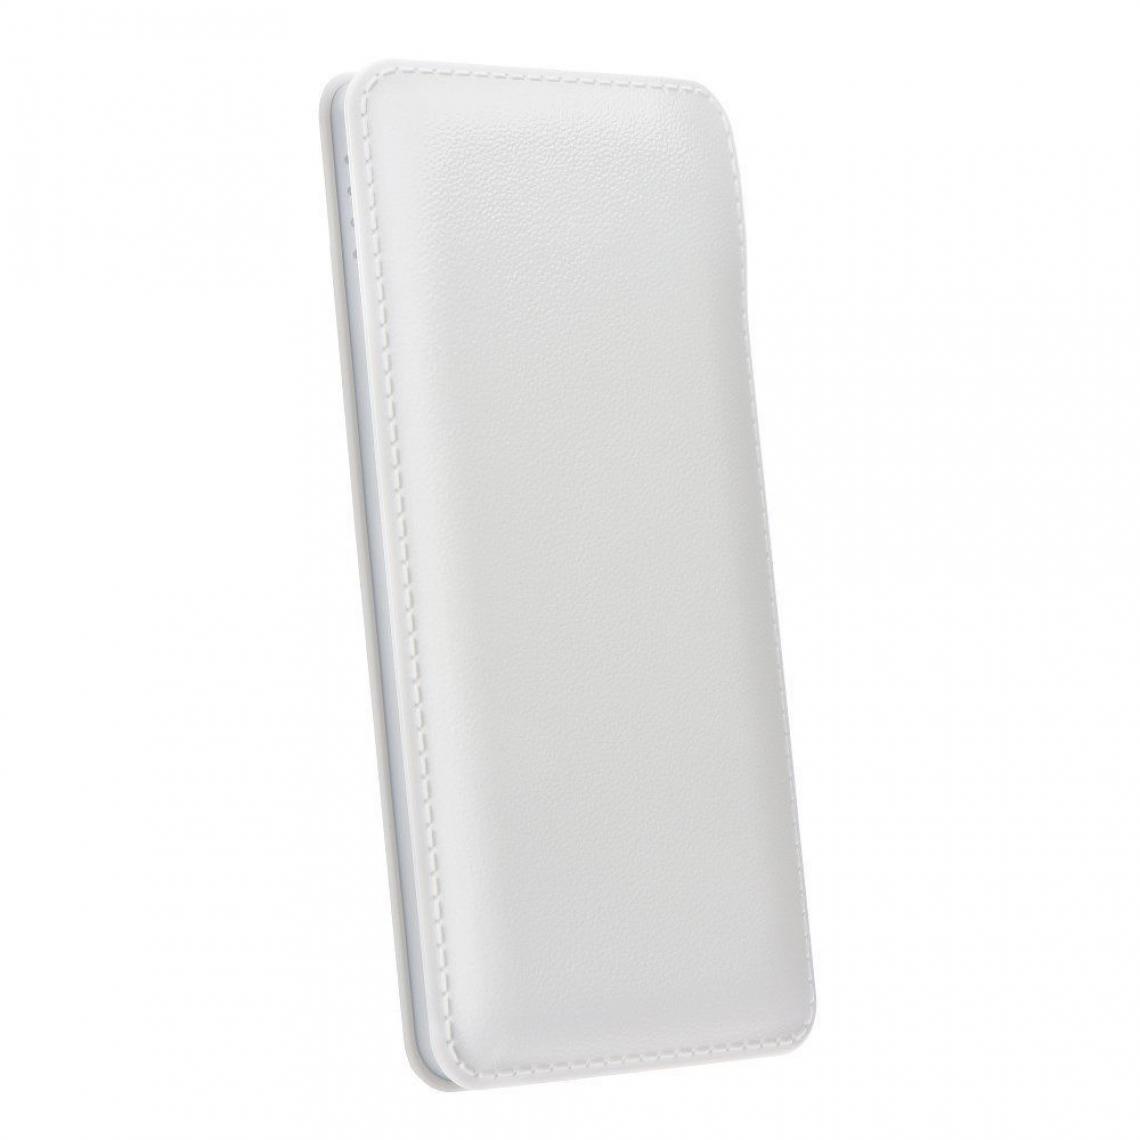 Ozzzo - Chargeur batterie externe 30000 mAh powerbank ozzzo blanc pour Realme 3 - Autres accessoires smartphone